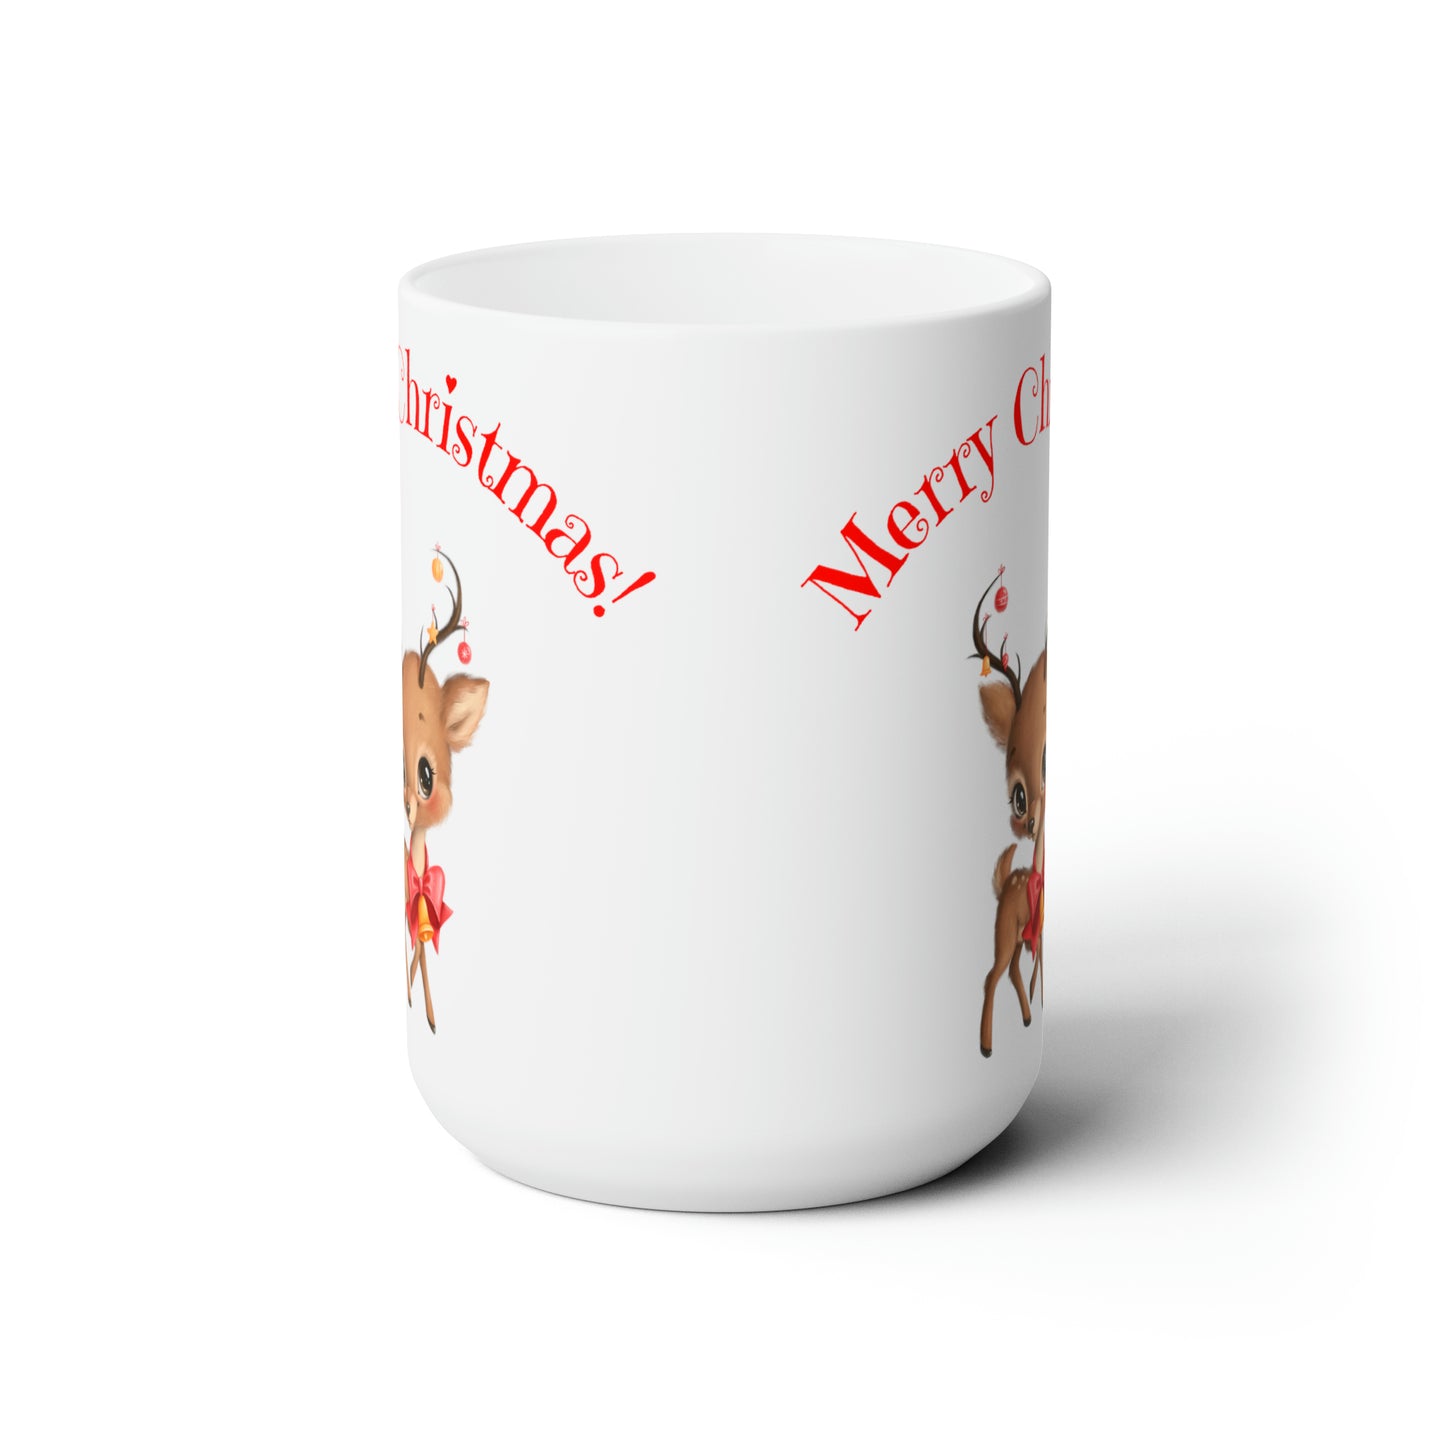 Merry Christmas Theme Mug, Ceramic, 15oz